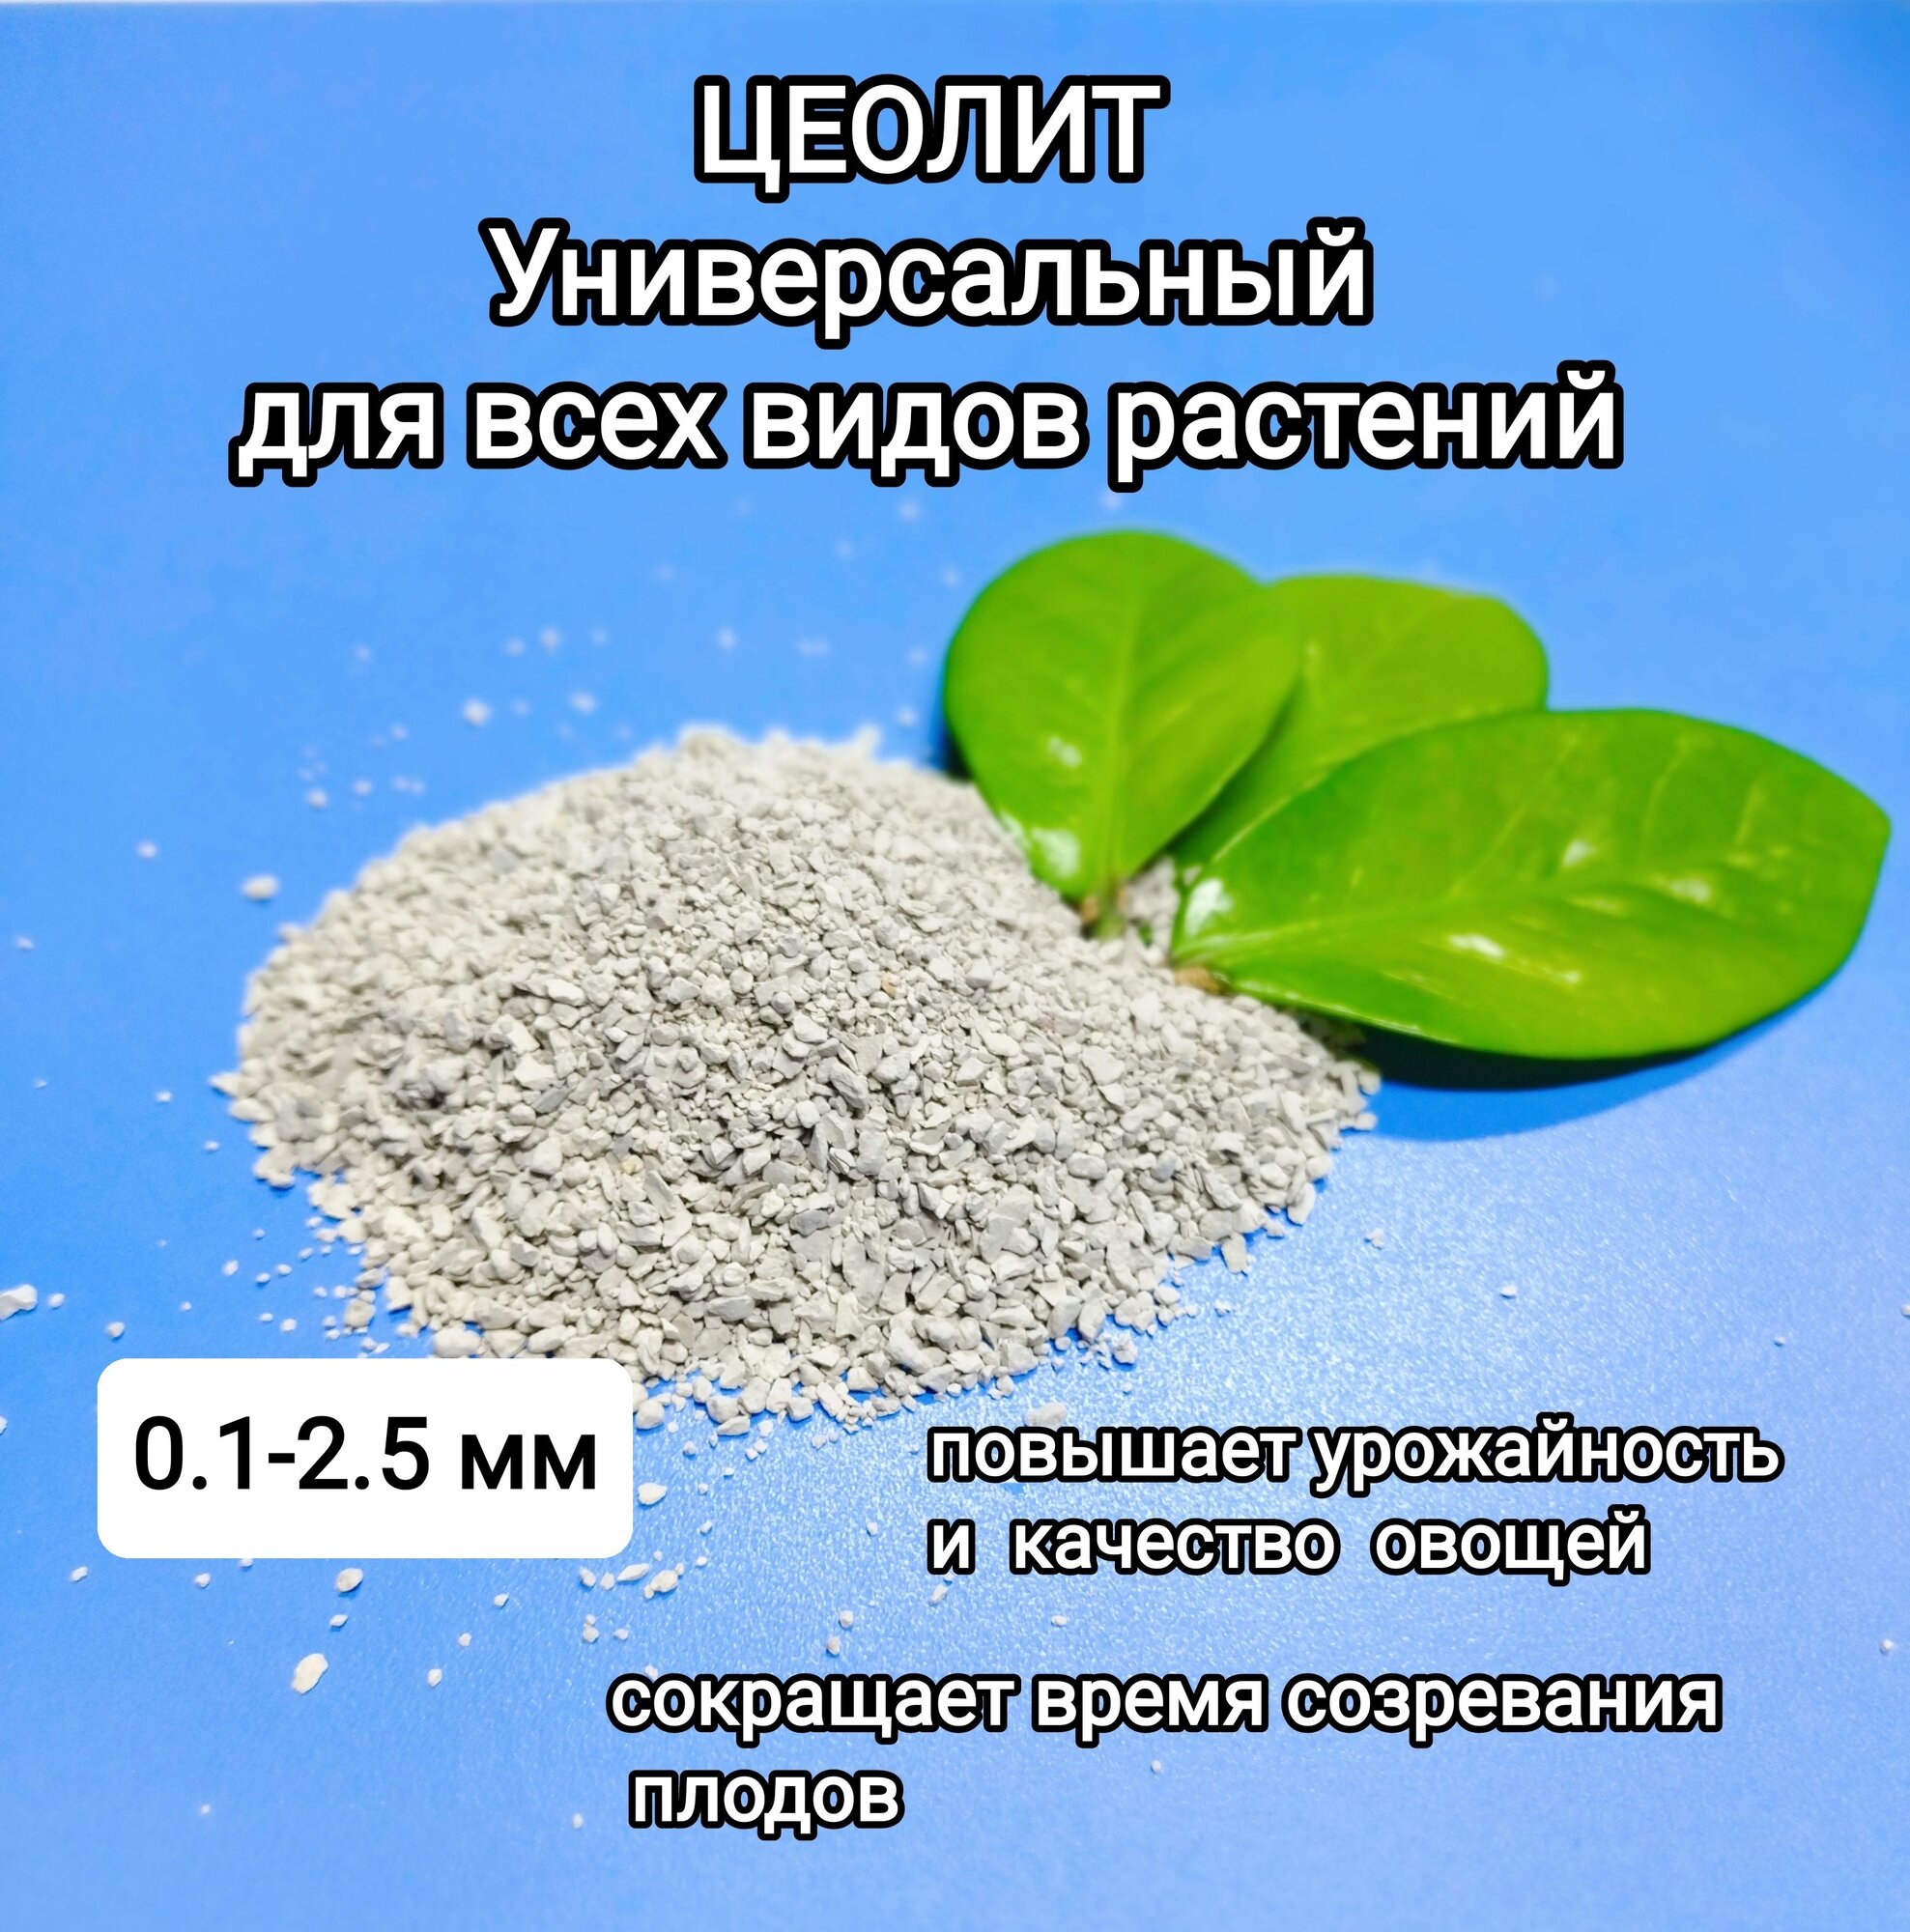 Цеолит универсальный, удобрение для всех видов растений, фракция 0,1-2,5 мм.